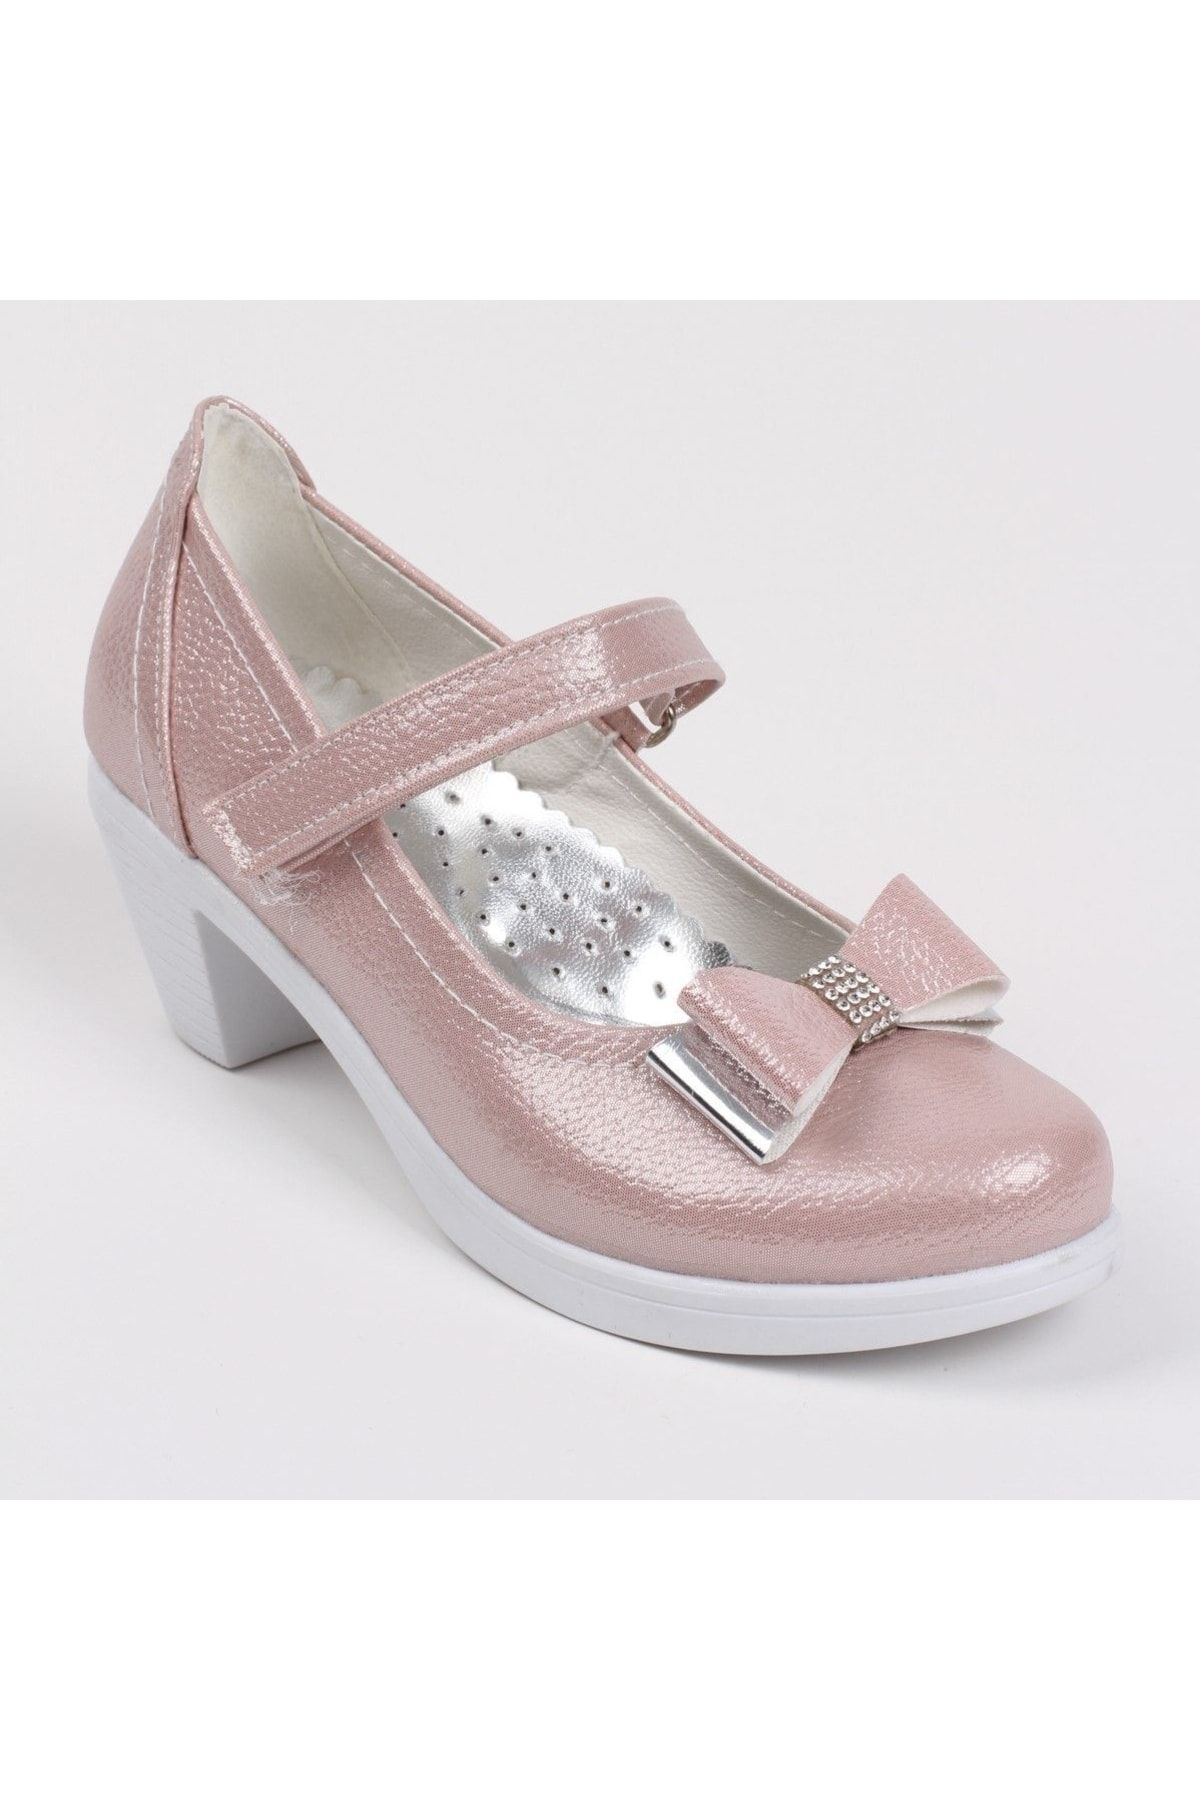 Sare Çocuk Giyim Pembe Kız Çocuk Tokalı Topuklu Ayakkabı Abiye Ayakkabı Doğum Günü Özel Gün Ayakkabı